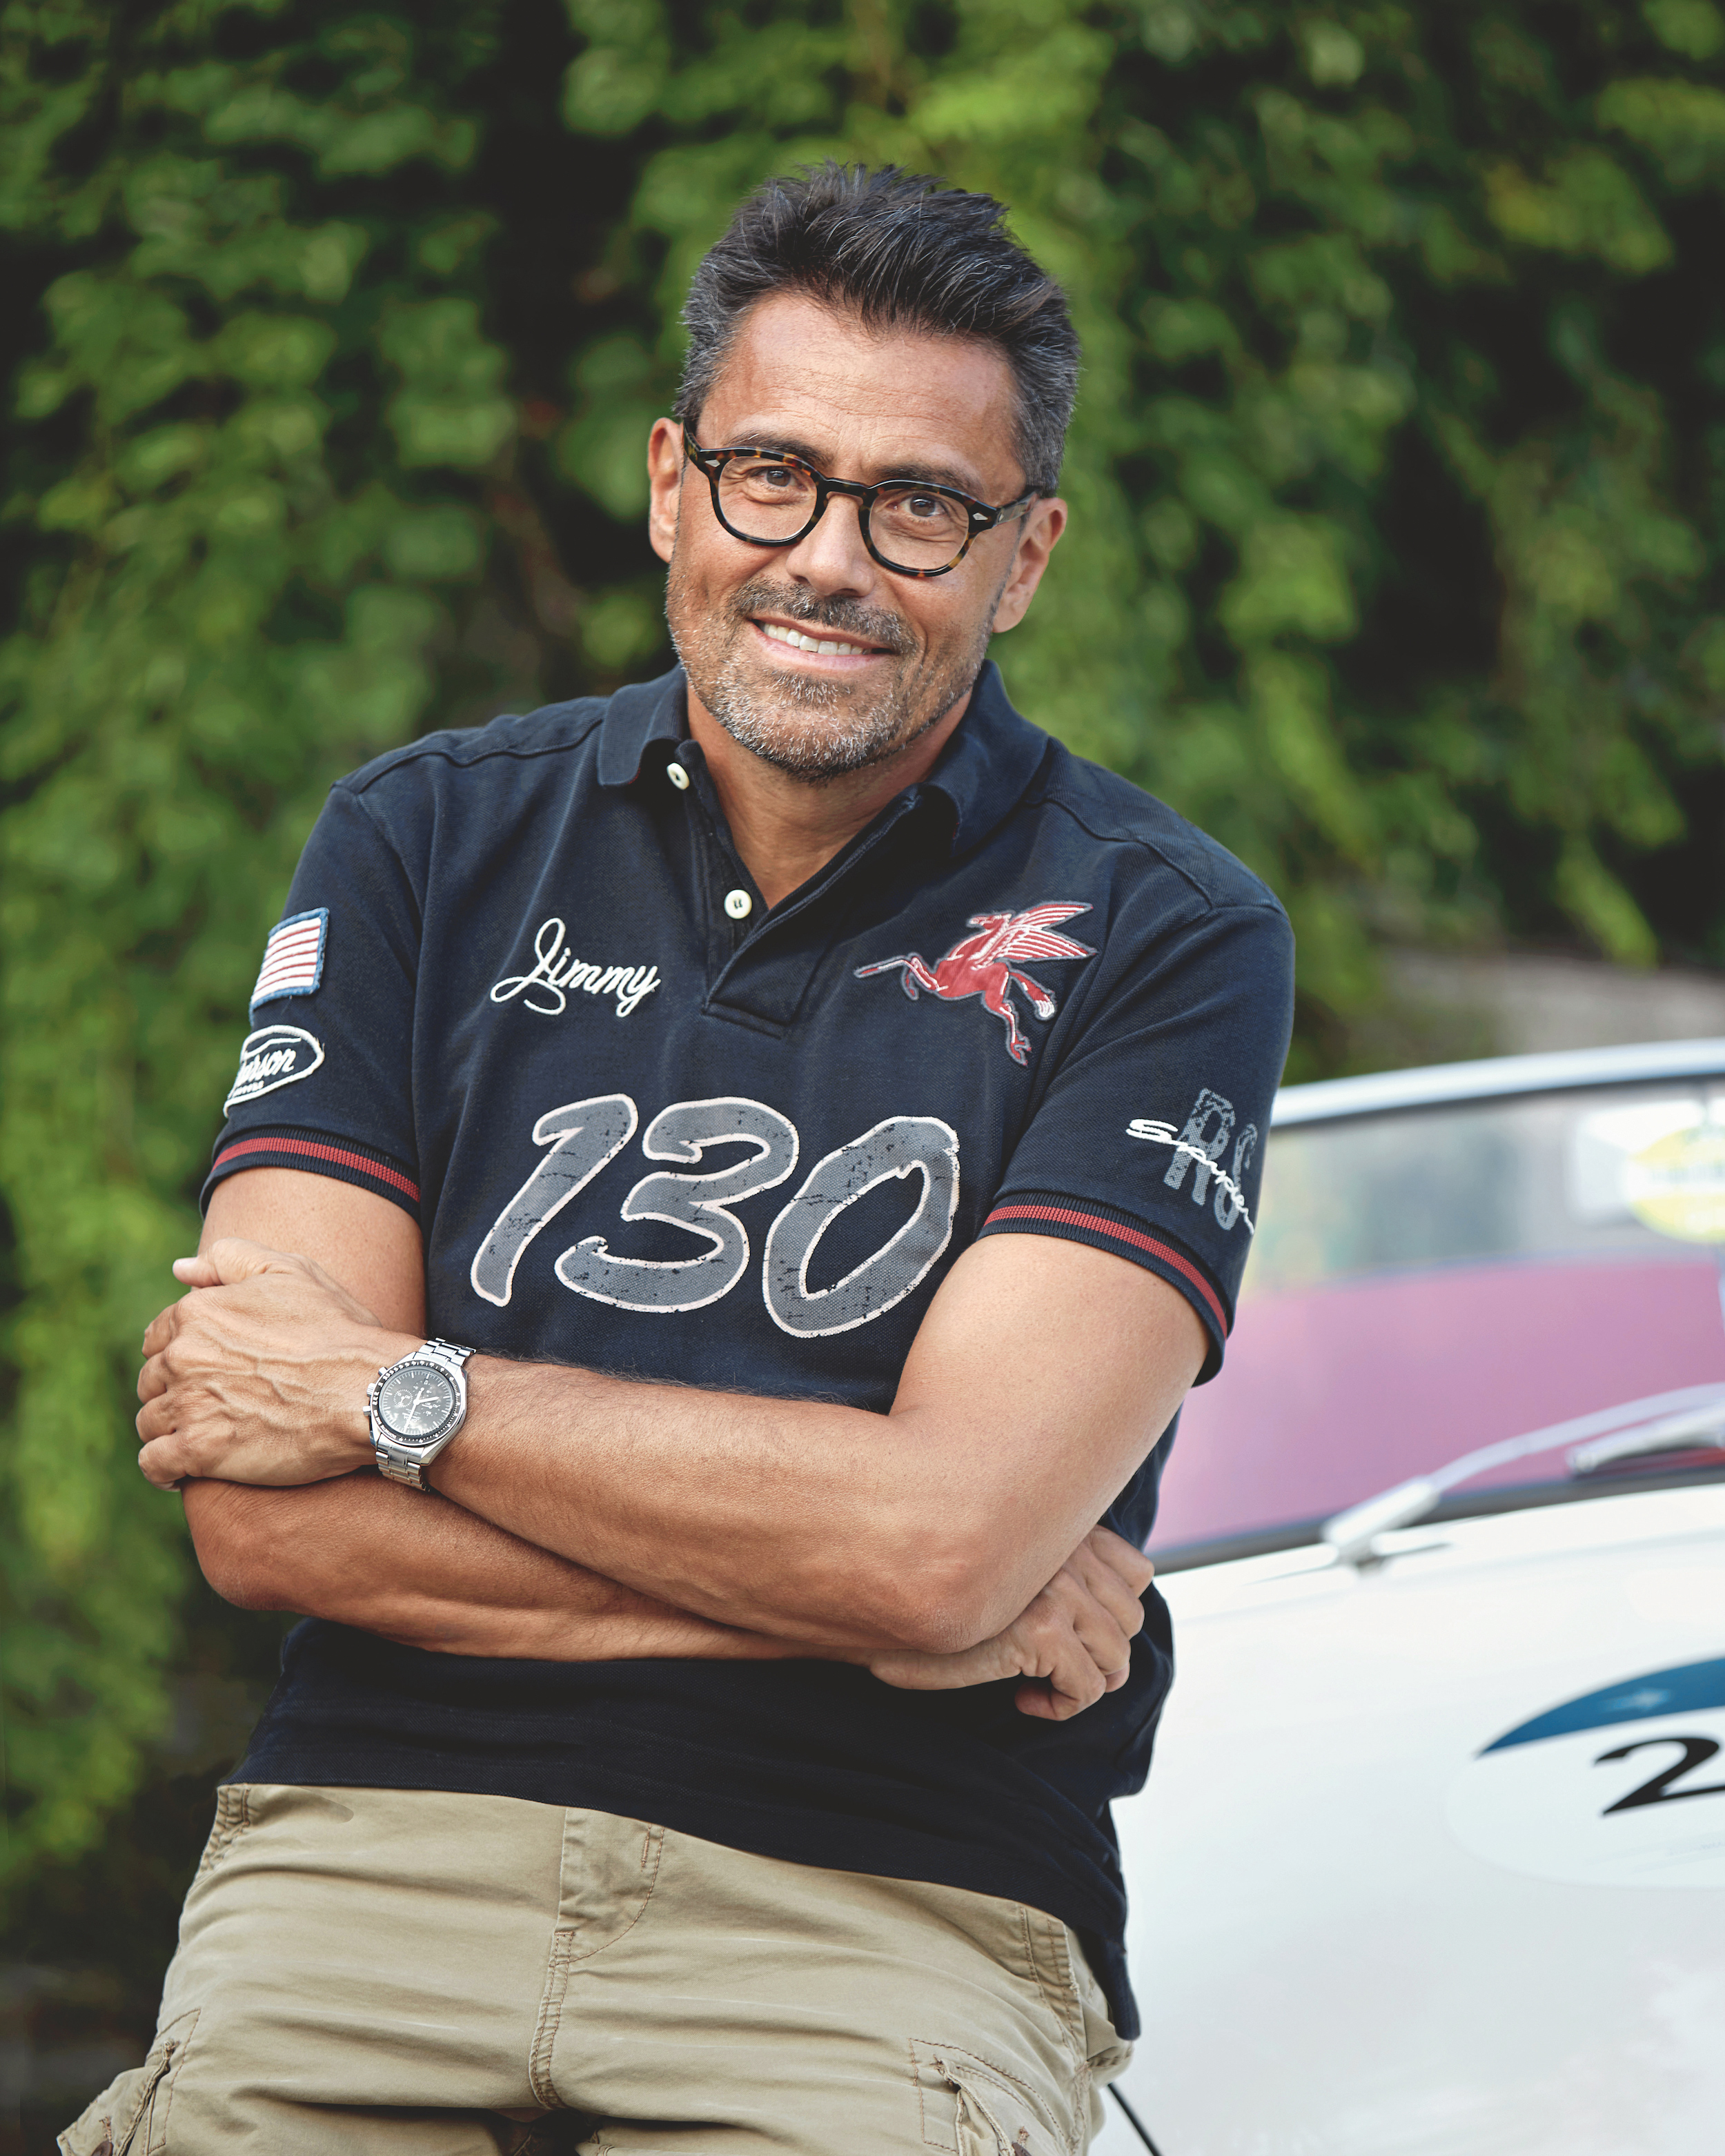 Bernard Moix, 2023, Porsche Schweiz AG